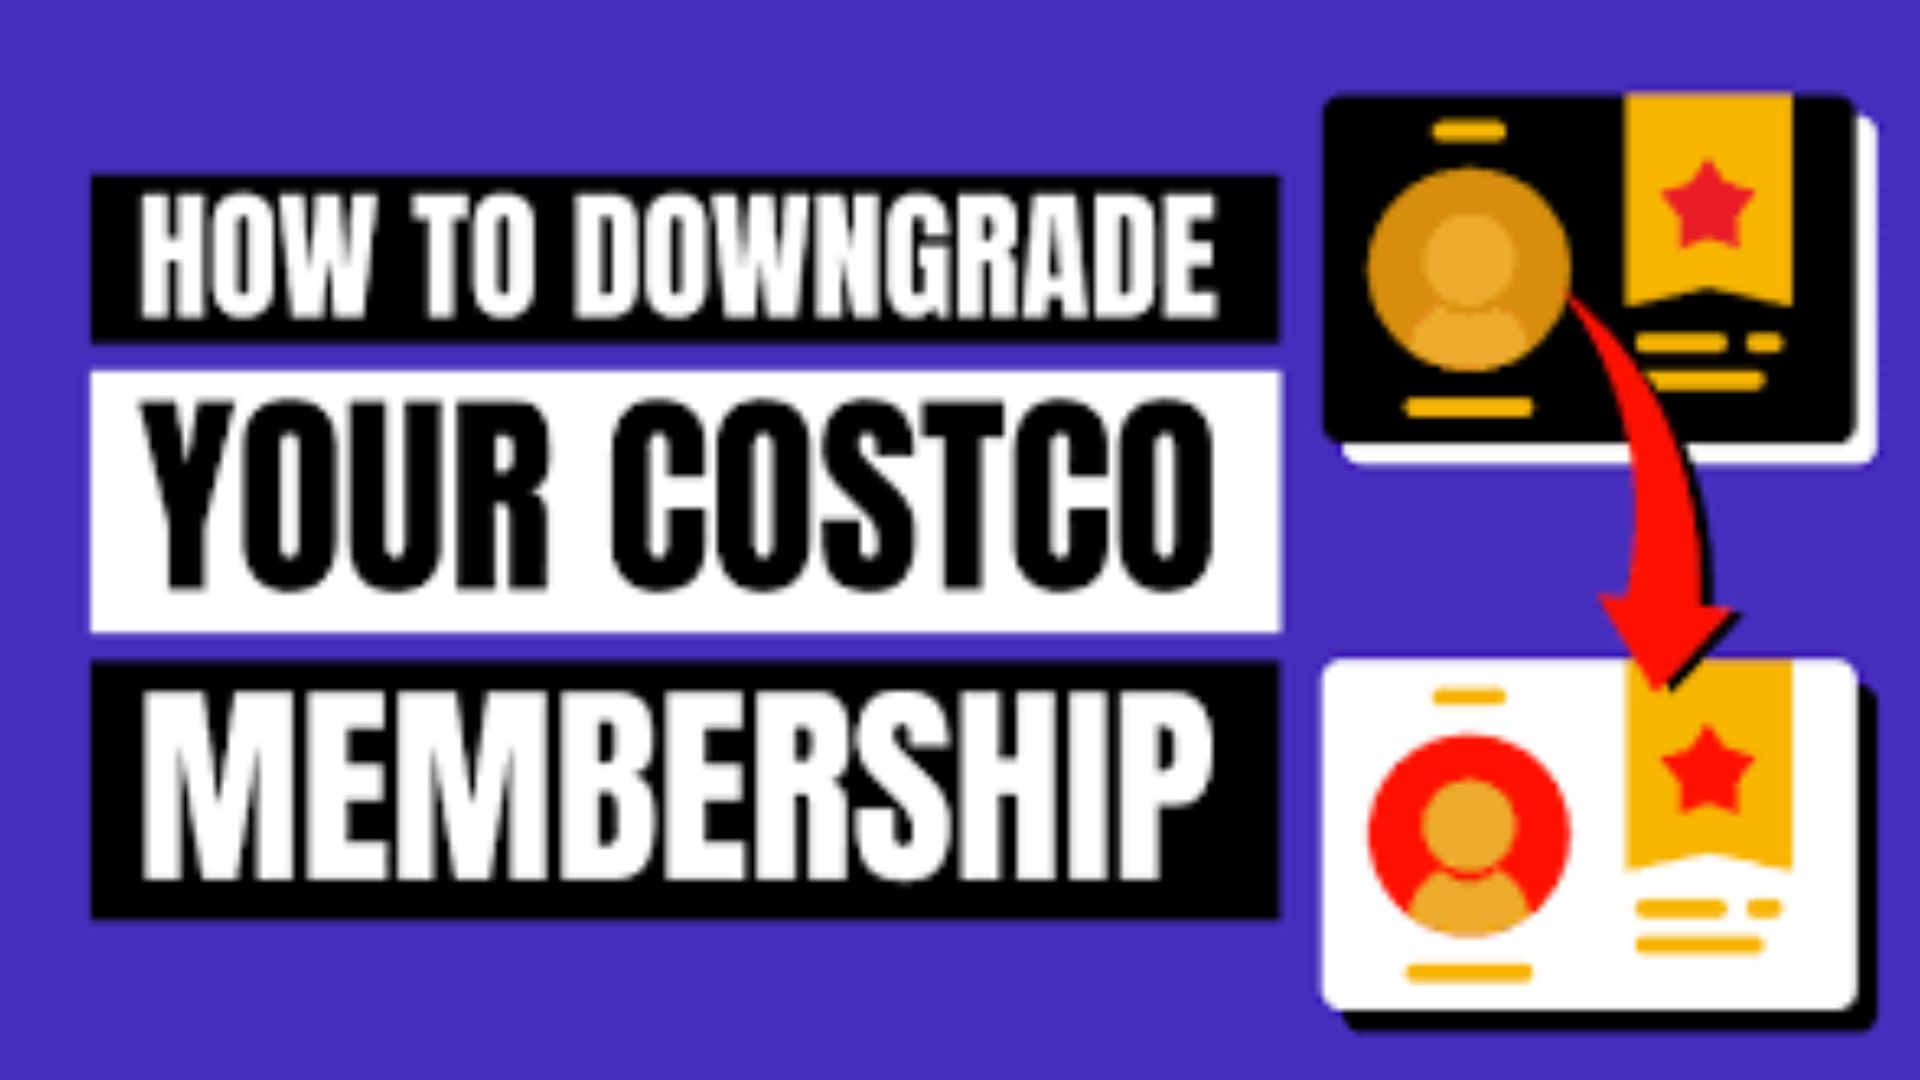 Downgrade Costco Membership